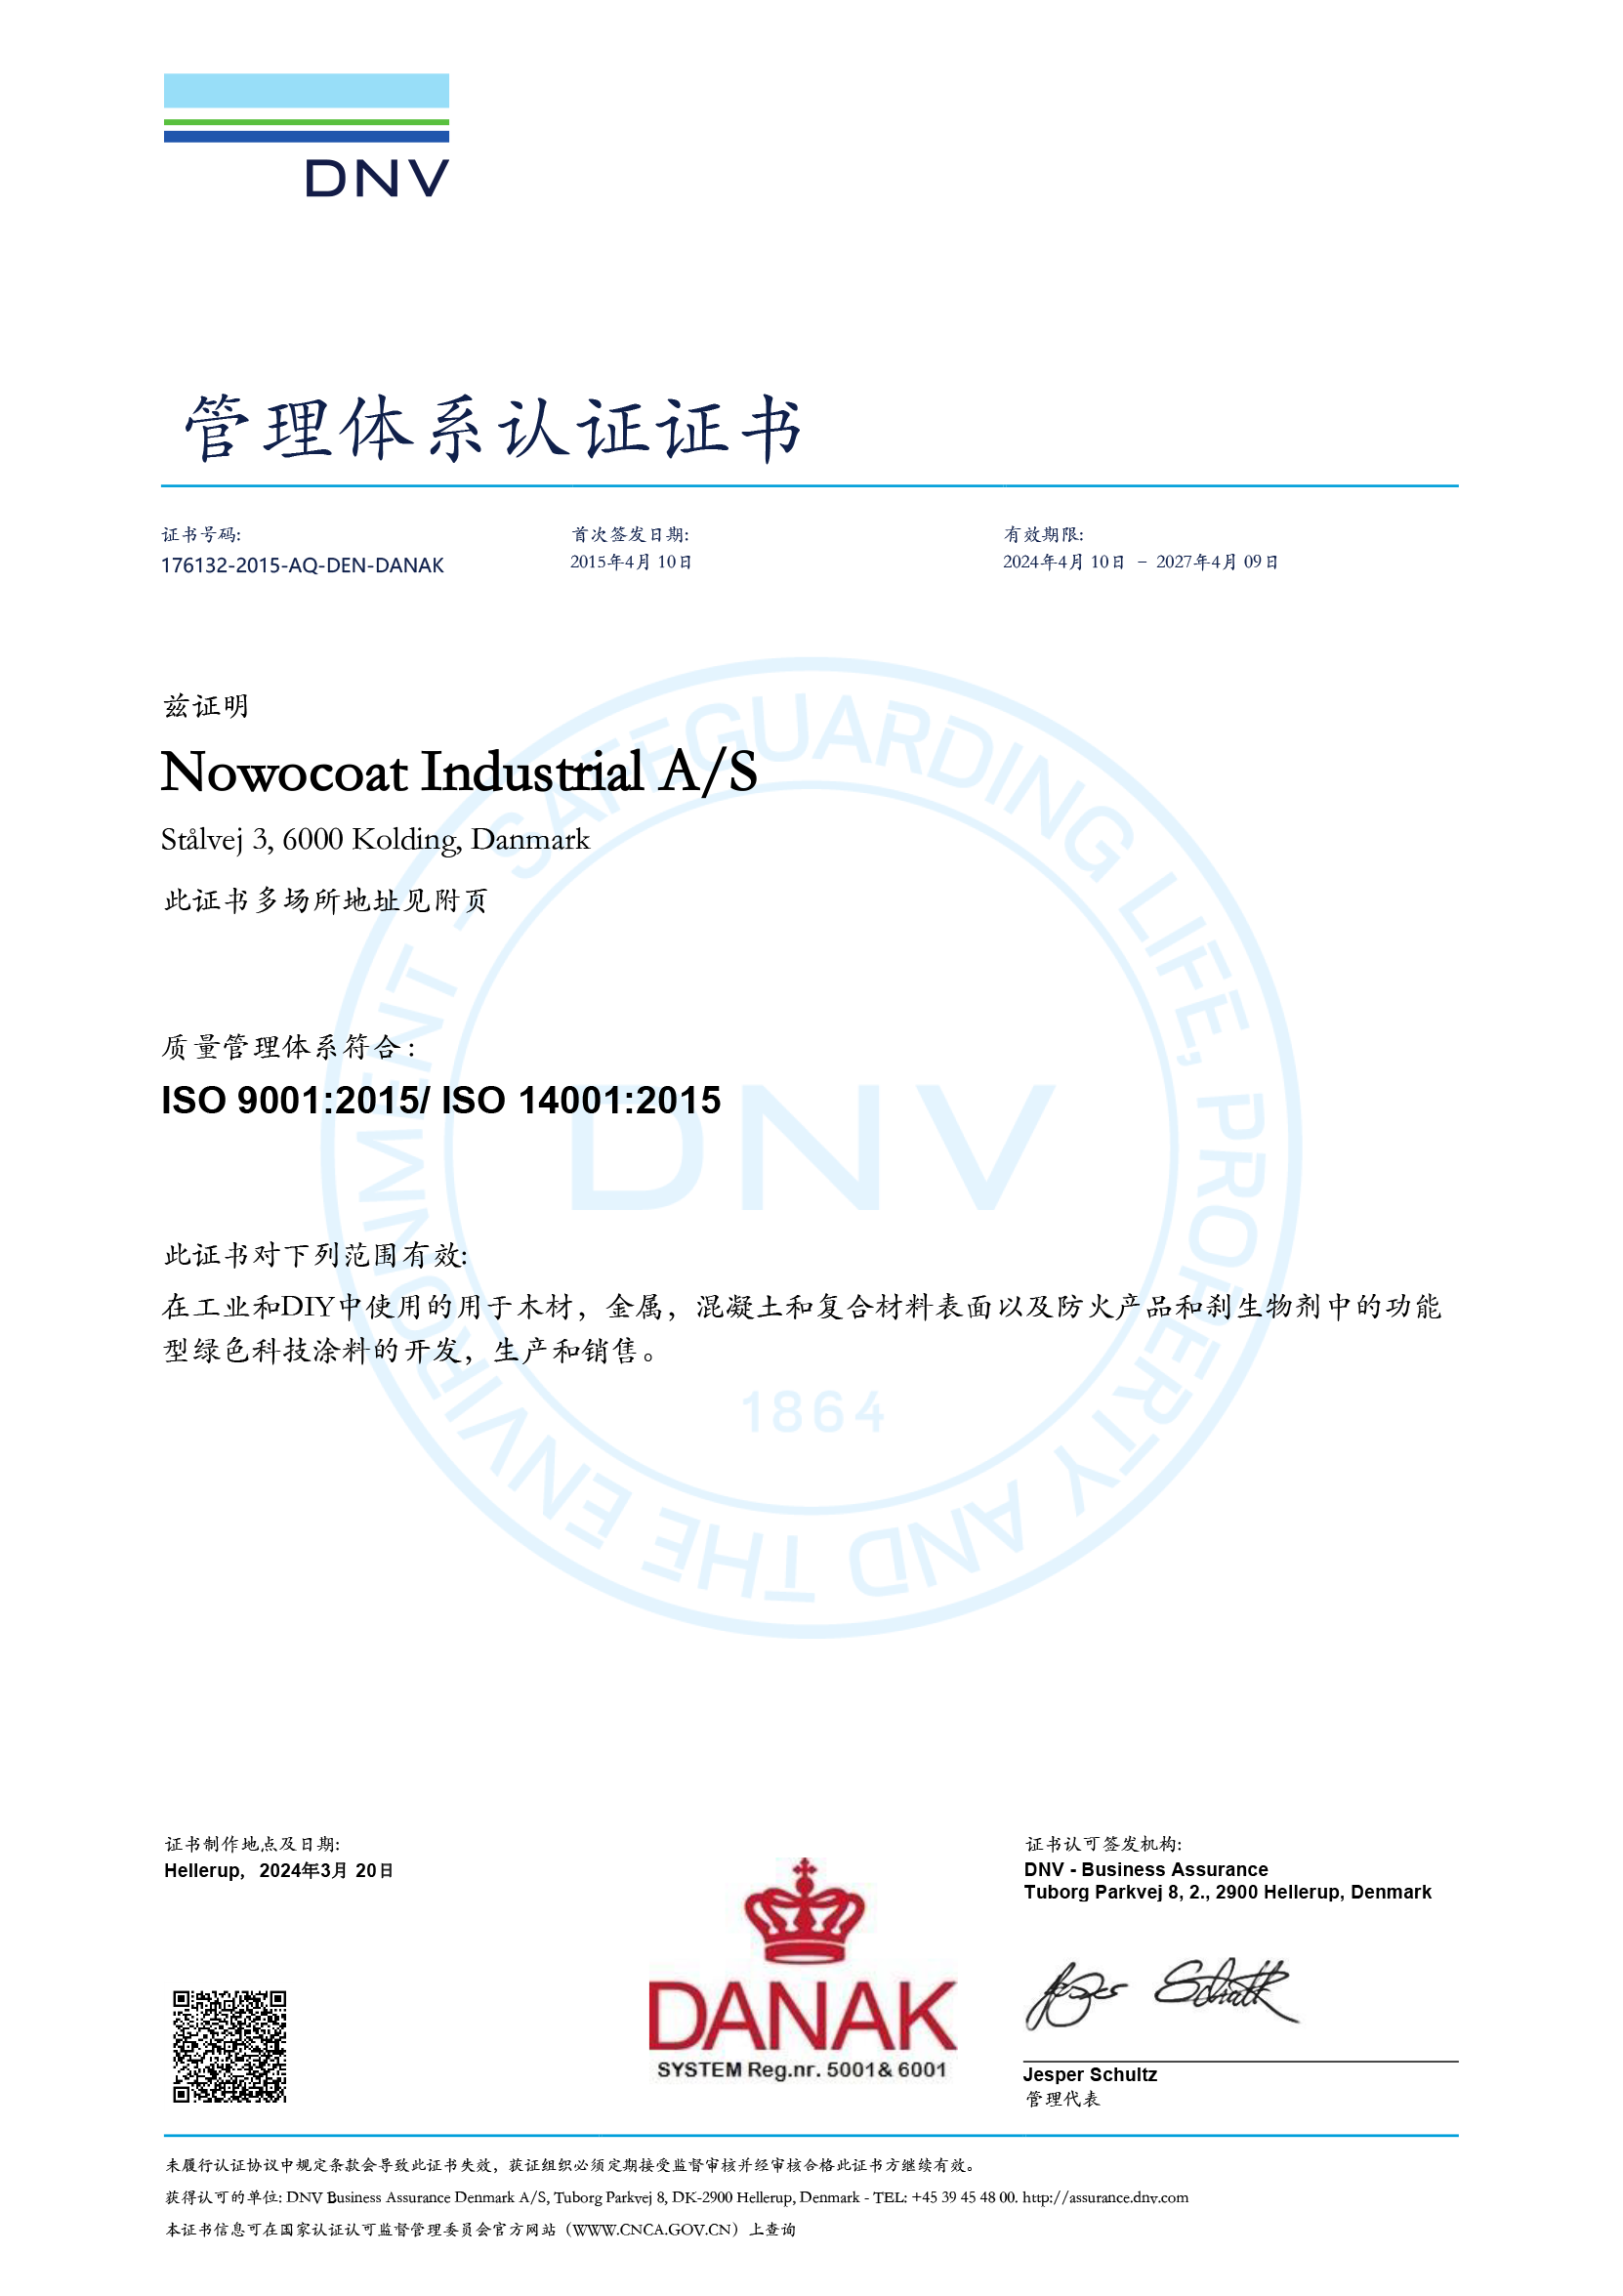 ISO 9001 14001 176132 2015 AQ DEN DANAK rev 7 CHI.pdf 20210407 1617792862428